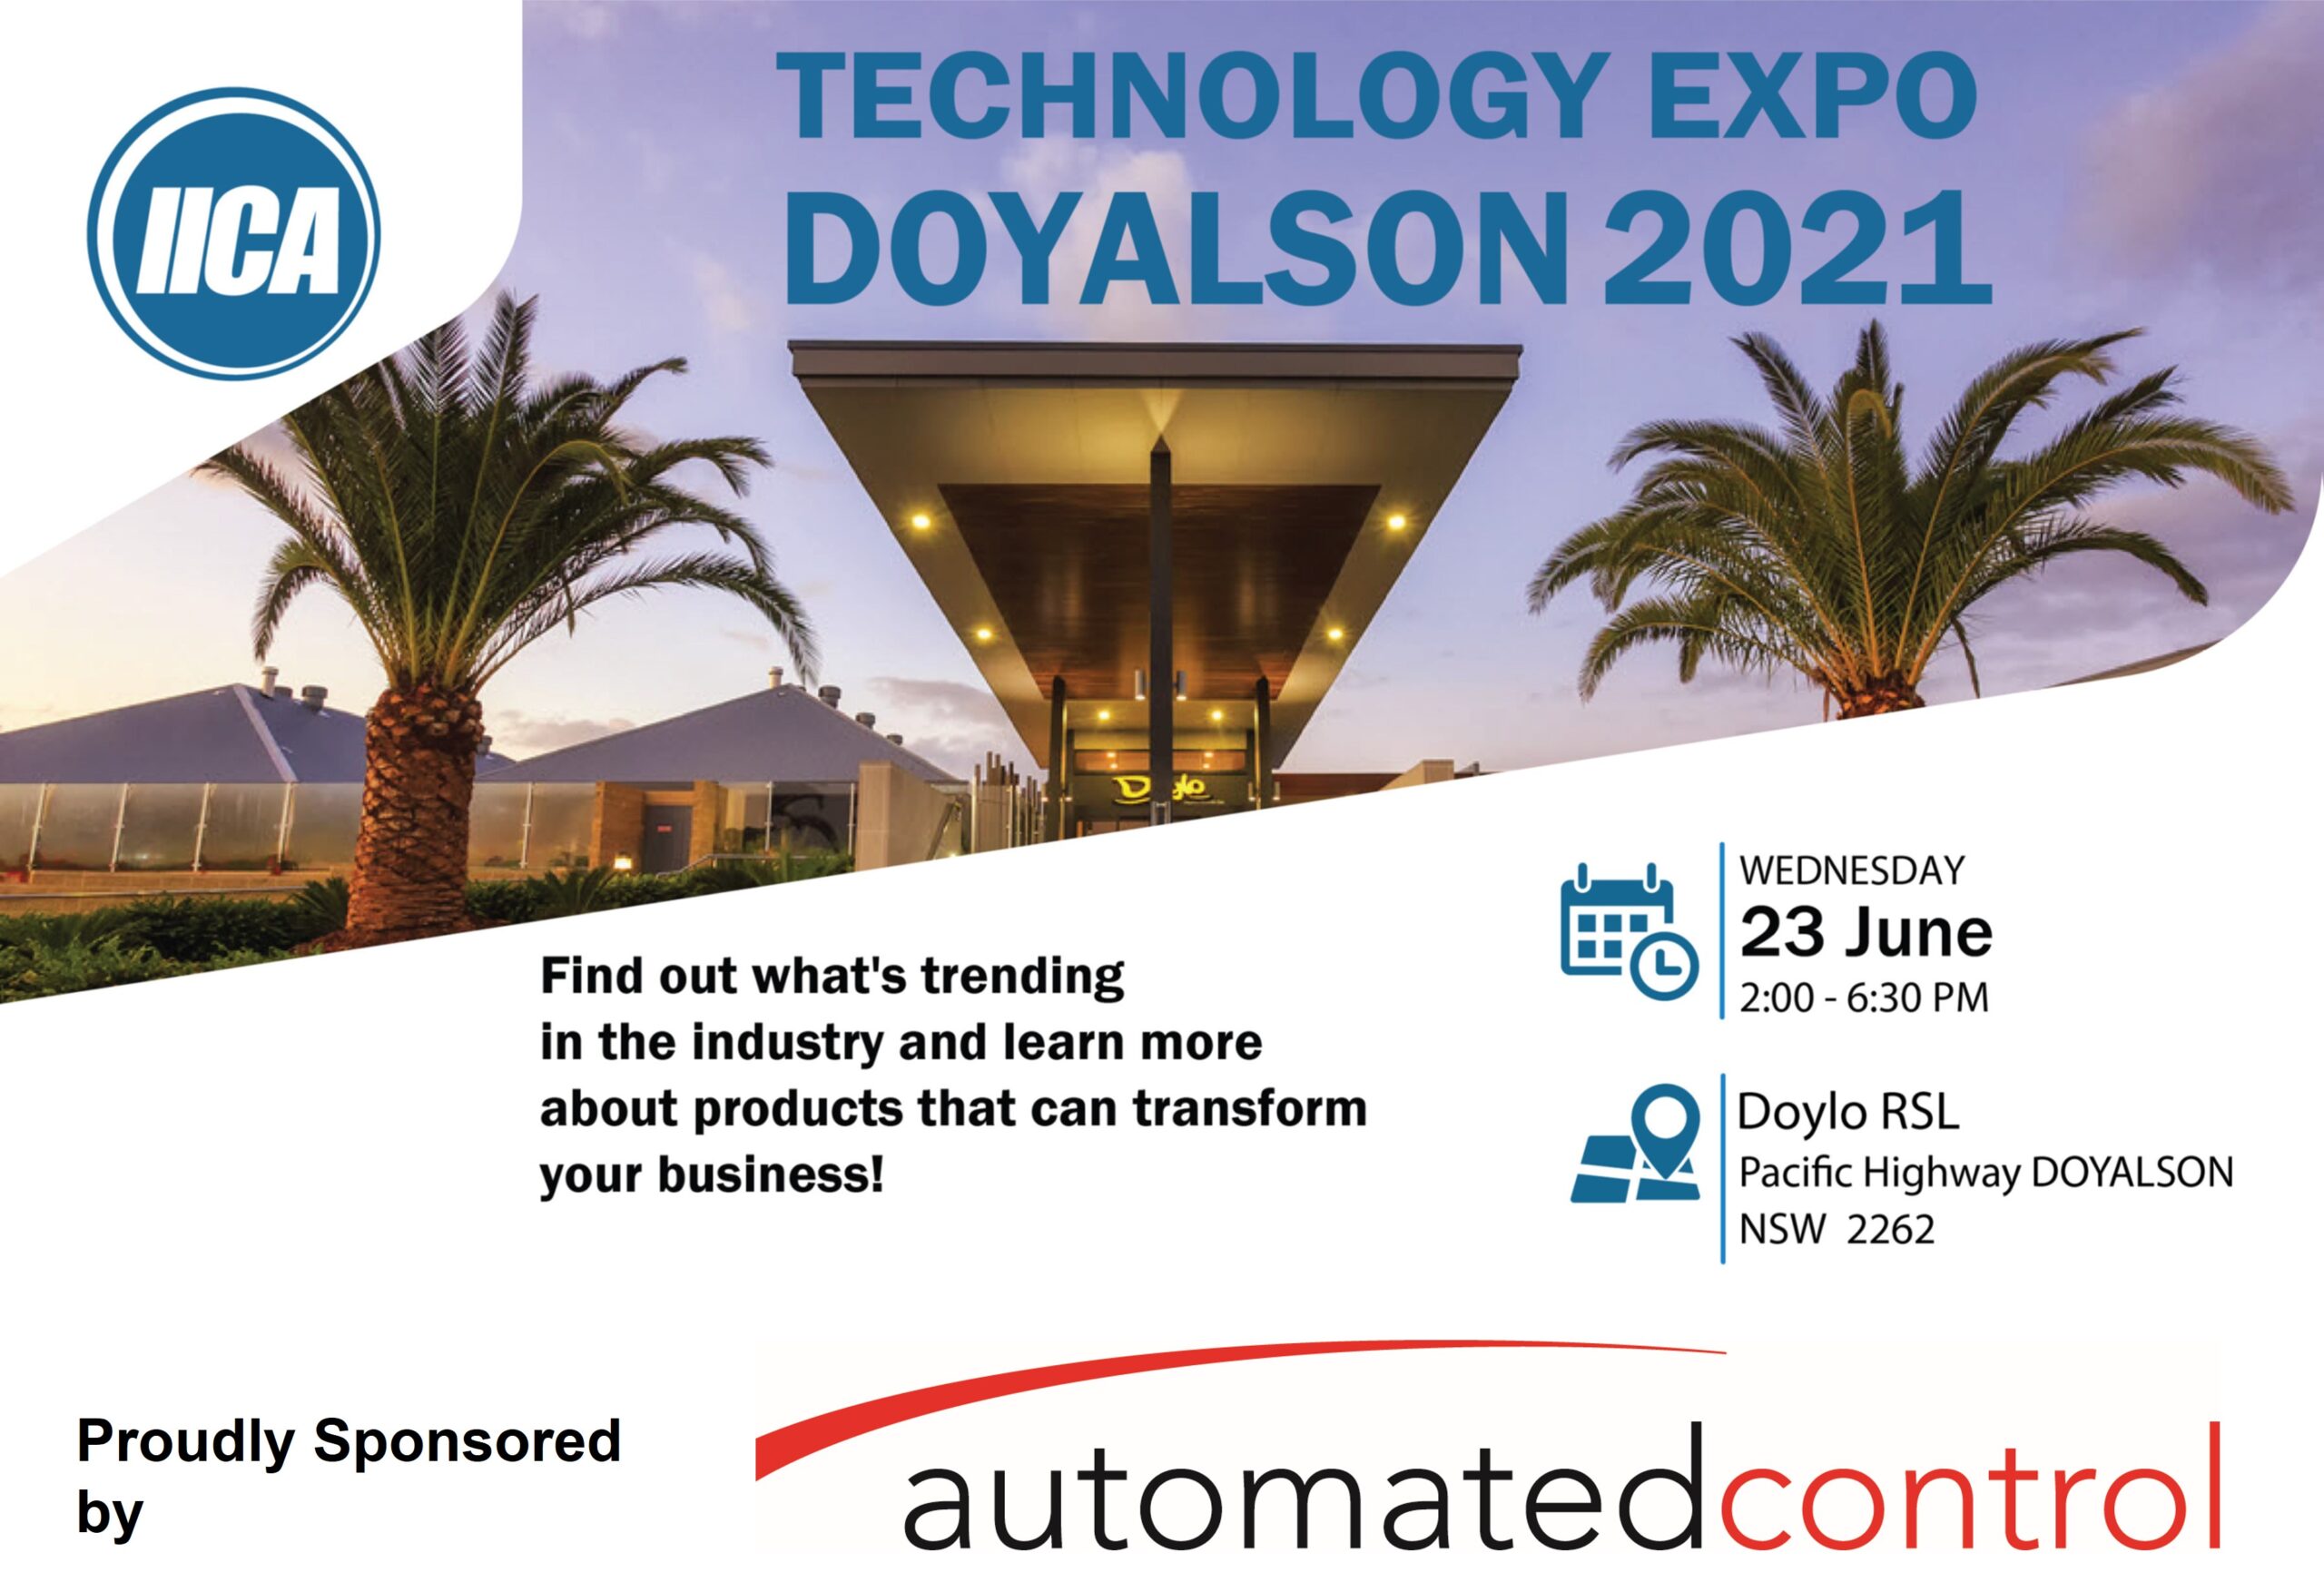 IICA Technology Expo DOYALSON 2021